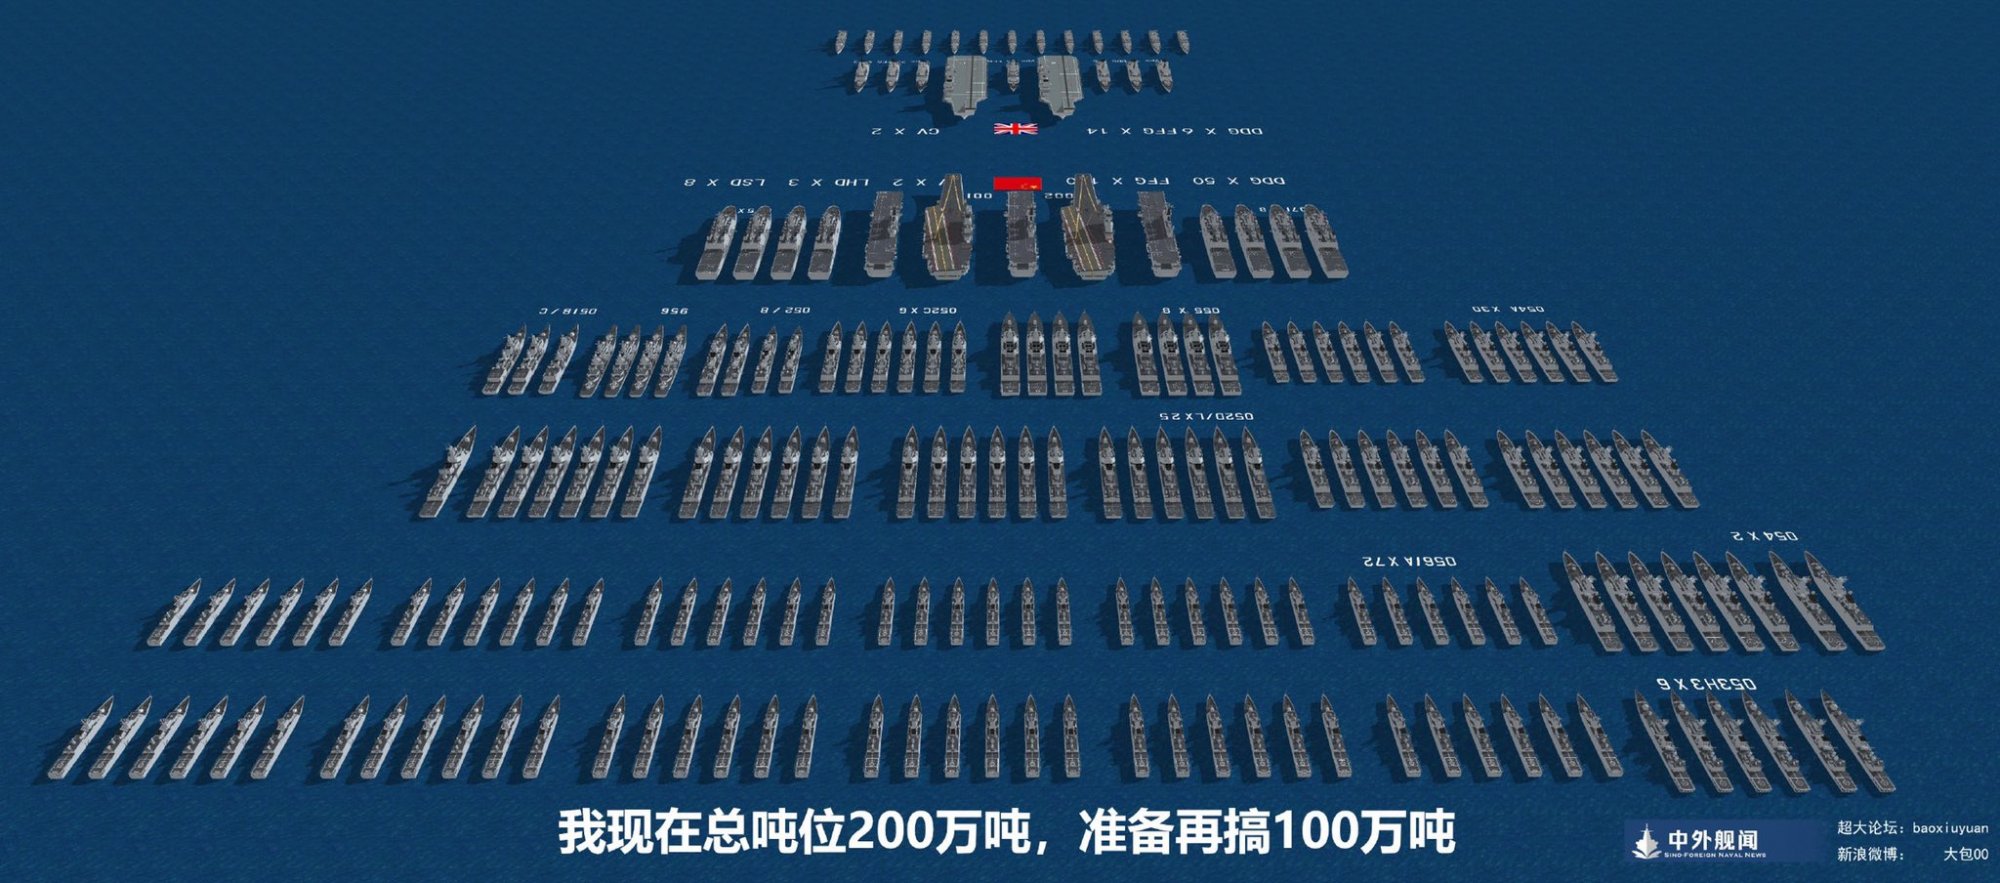 China Navy 8.jpg